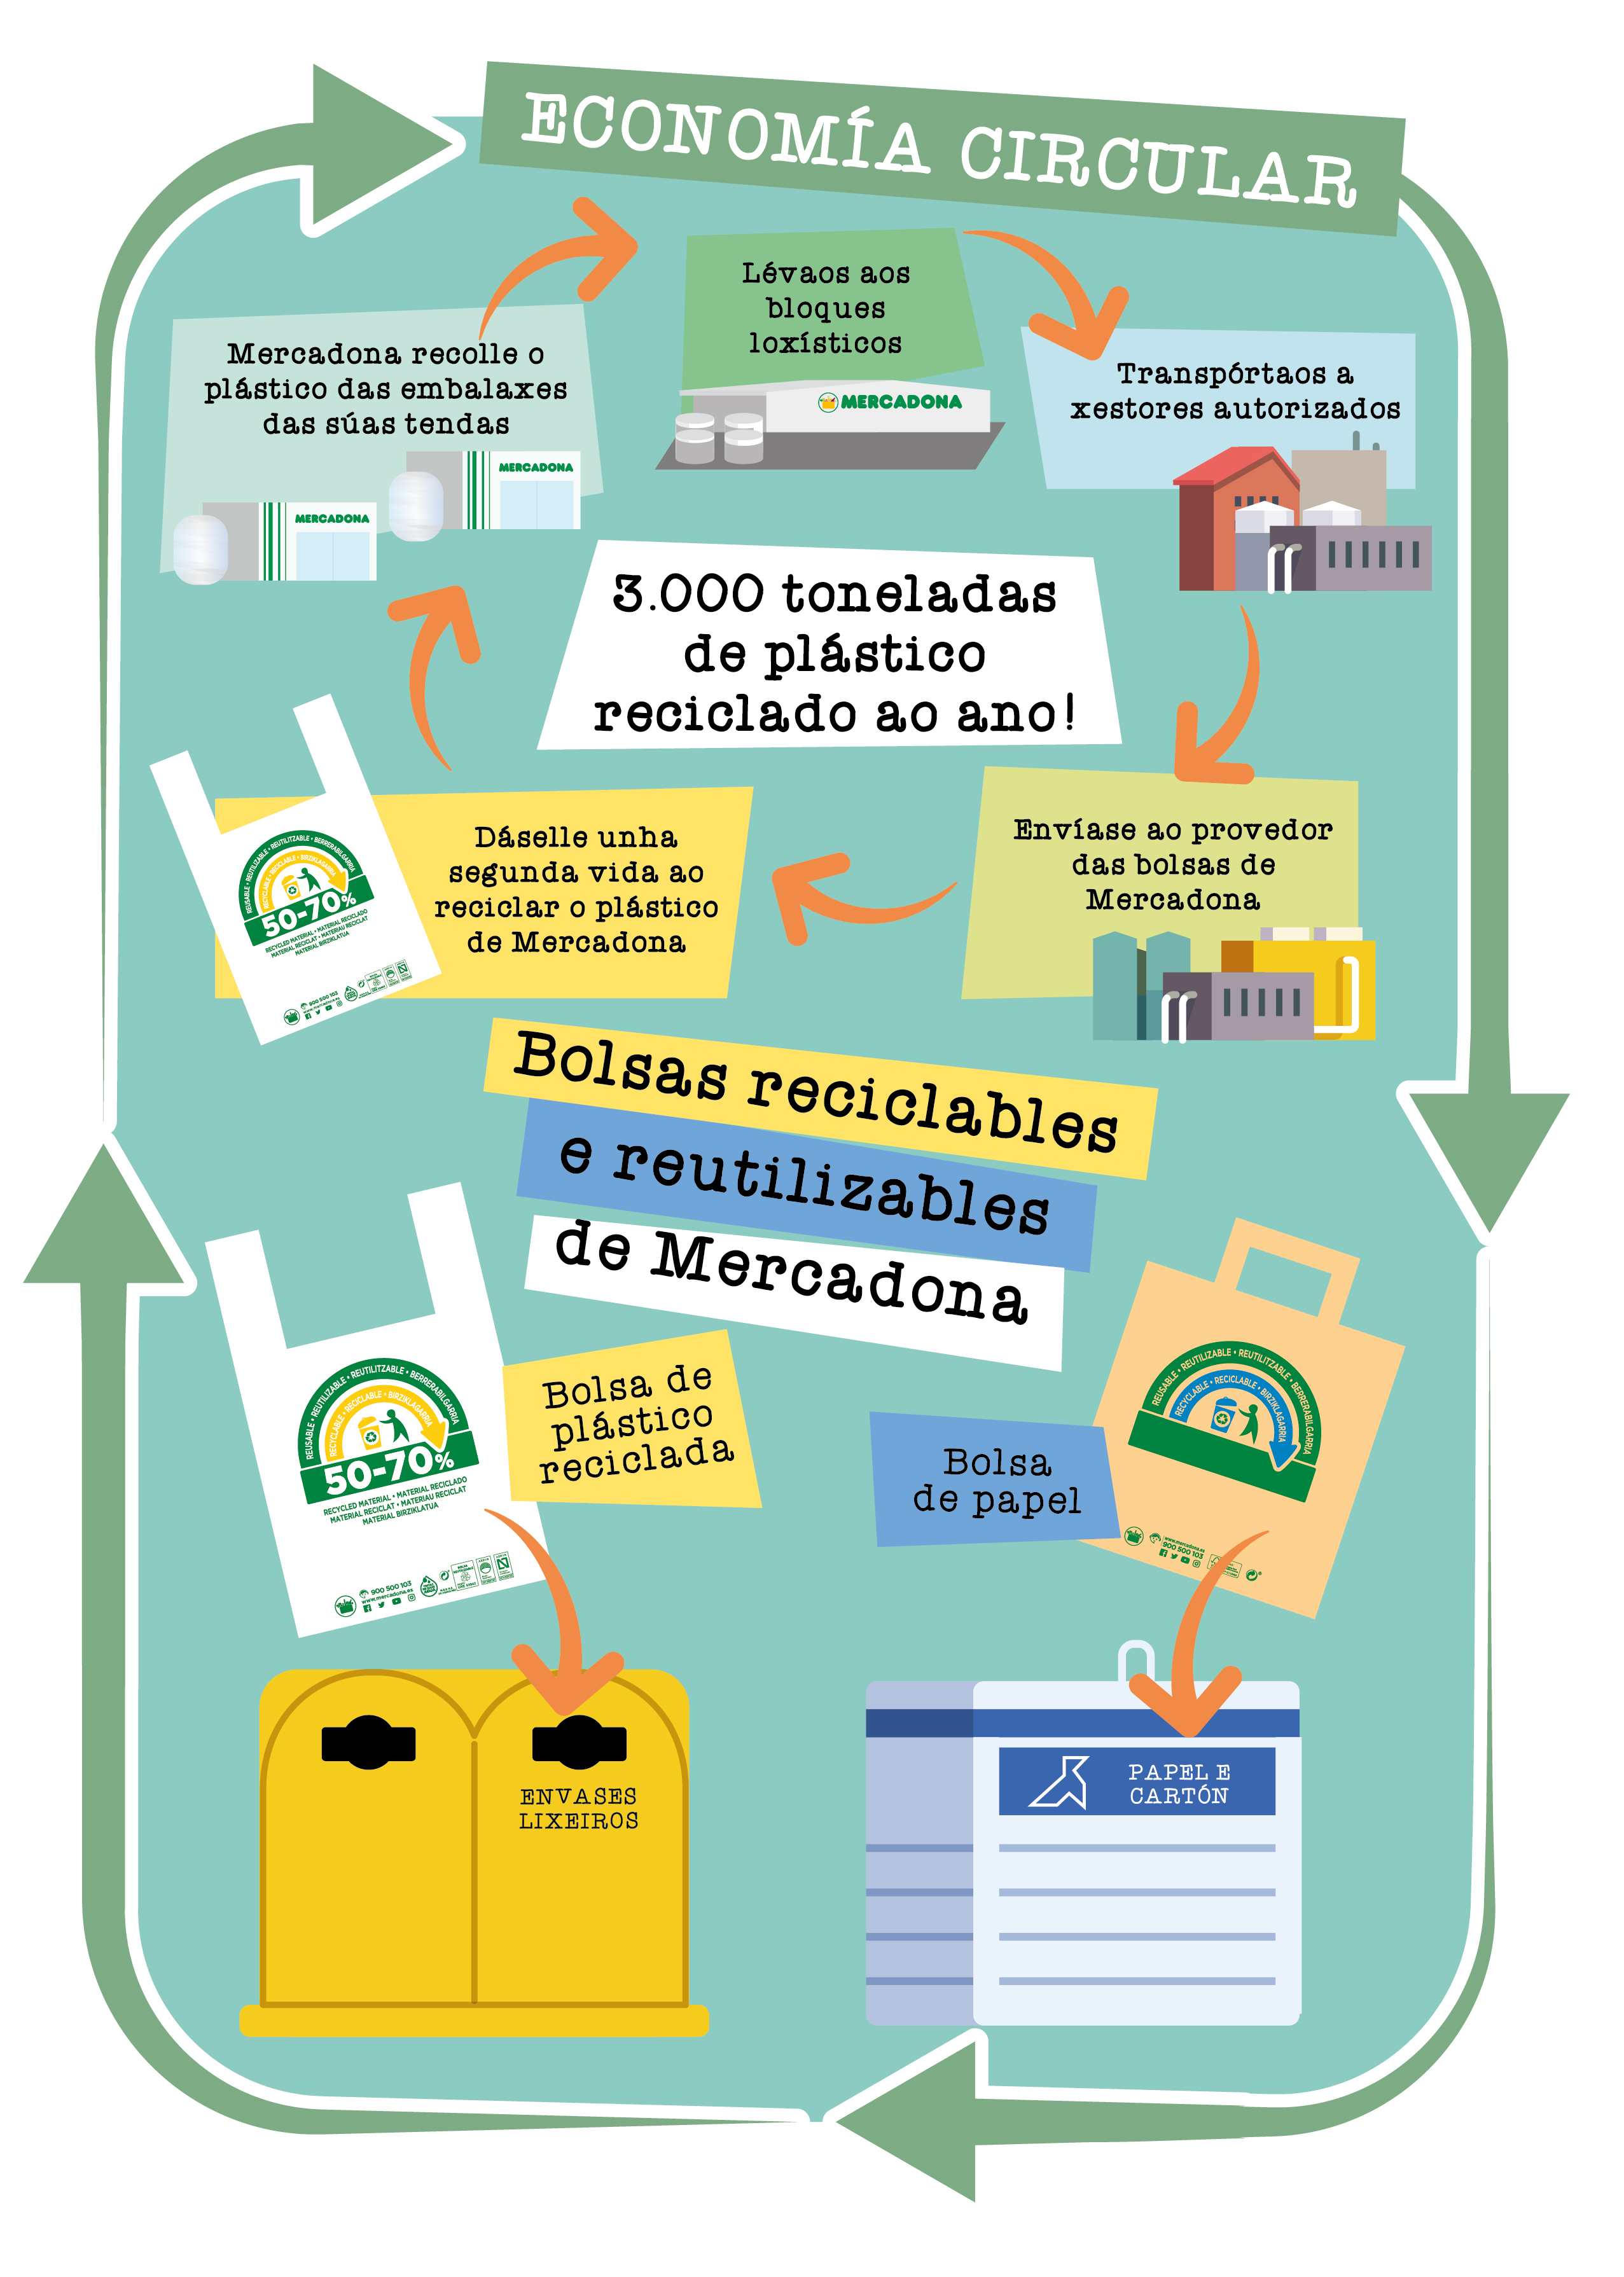 Reutilización e reciclaxe das bolsas de Mercadona